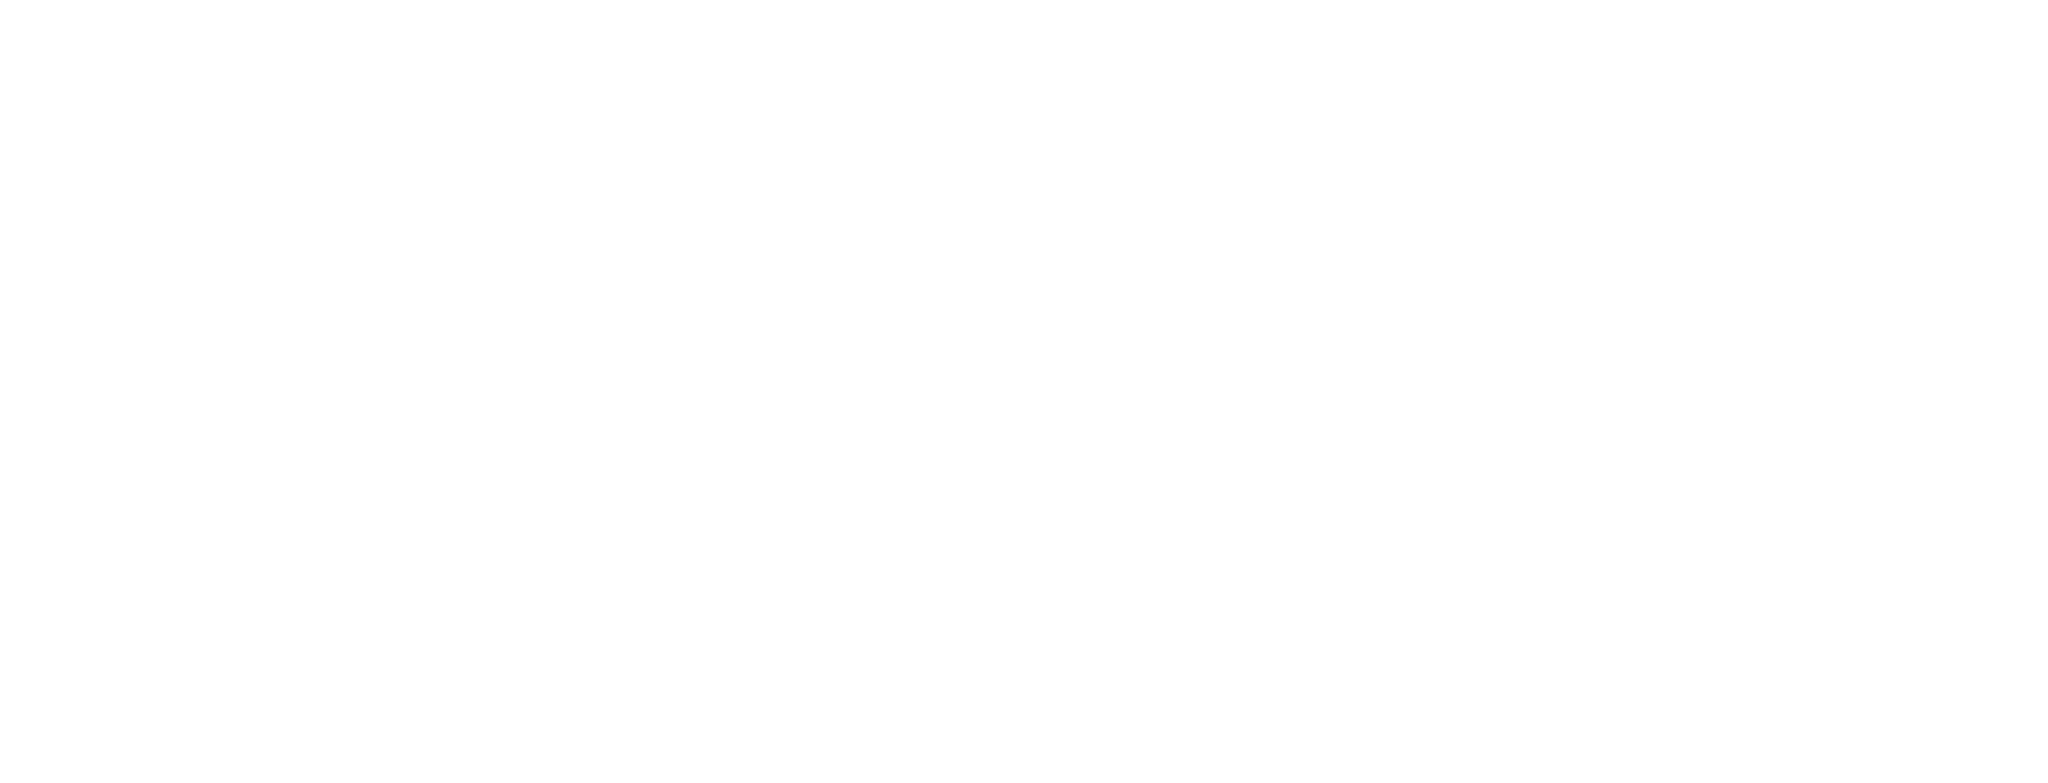 HAIR-BY-LAUREN